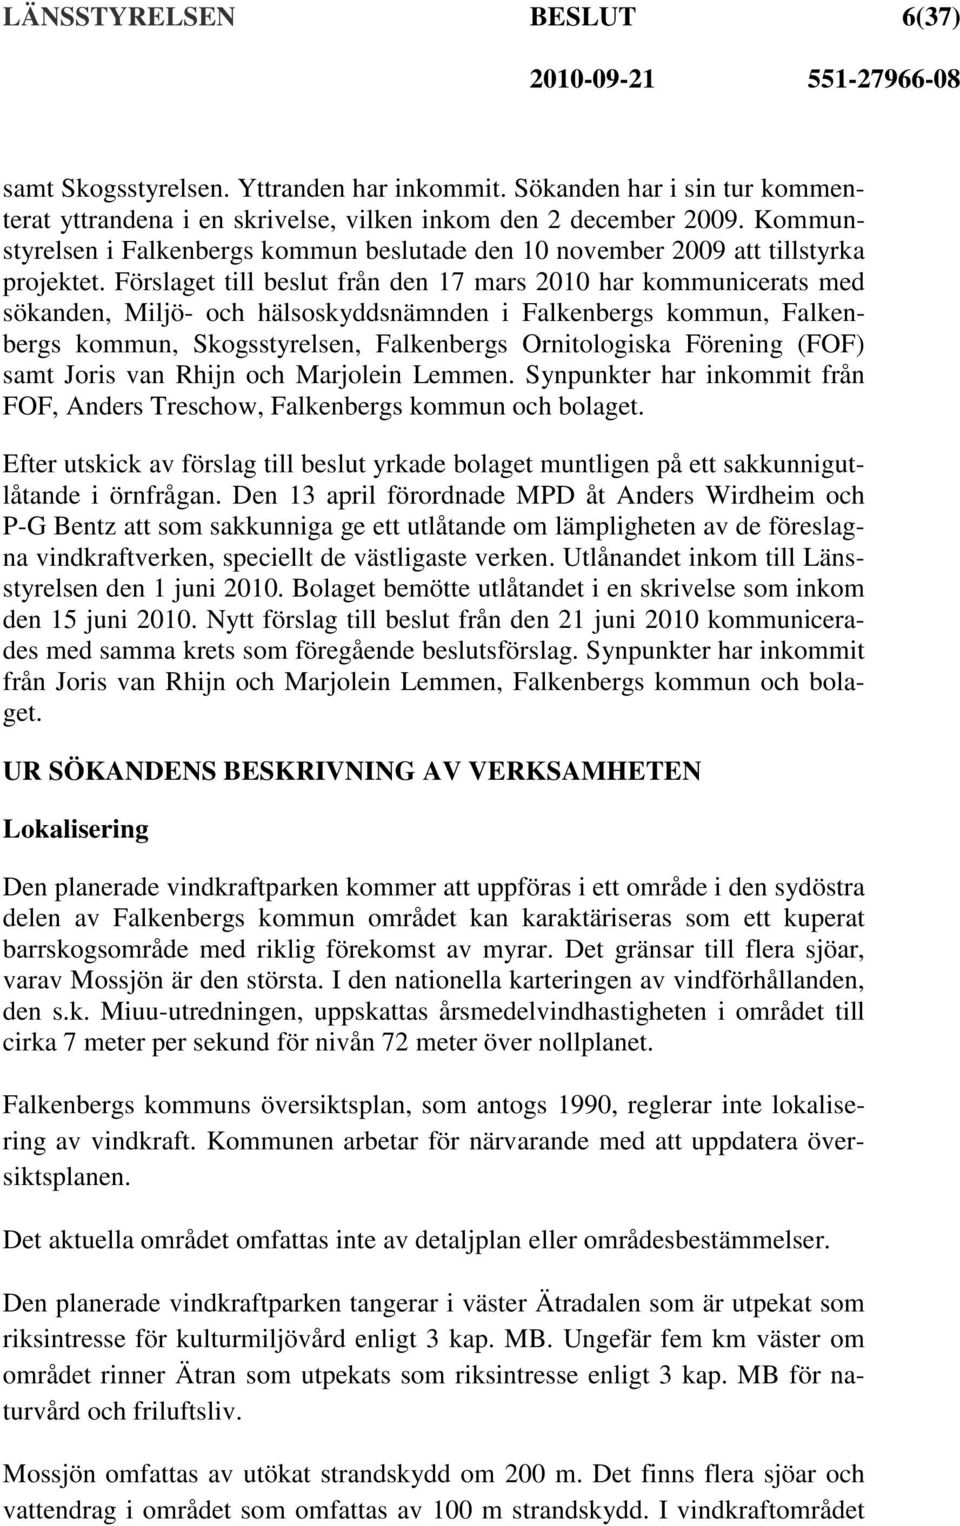 Förslaget till beslut från den 17 mars 2010 har kommunicerats med sökanden, Miljö- och hälsoskyddsnämnden i Falkenbergs kommun, Falkenbergs kommun, Skogsstyrelsen, Falkenbergs Ornitologiska Förening